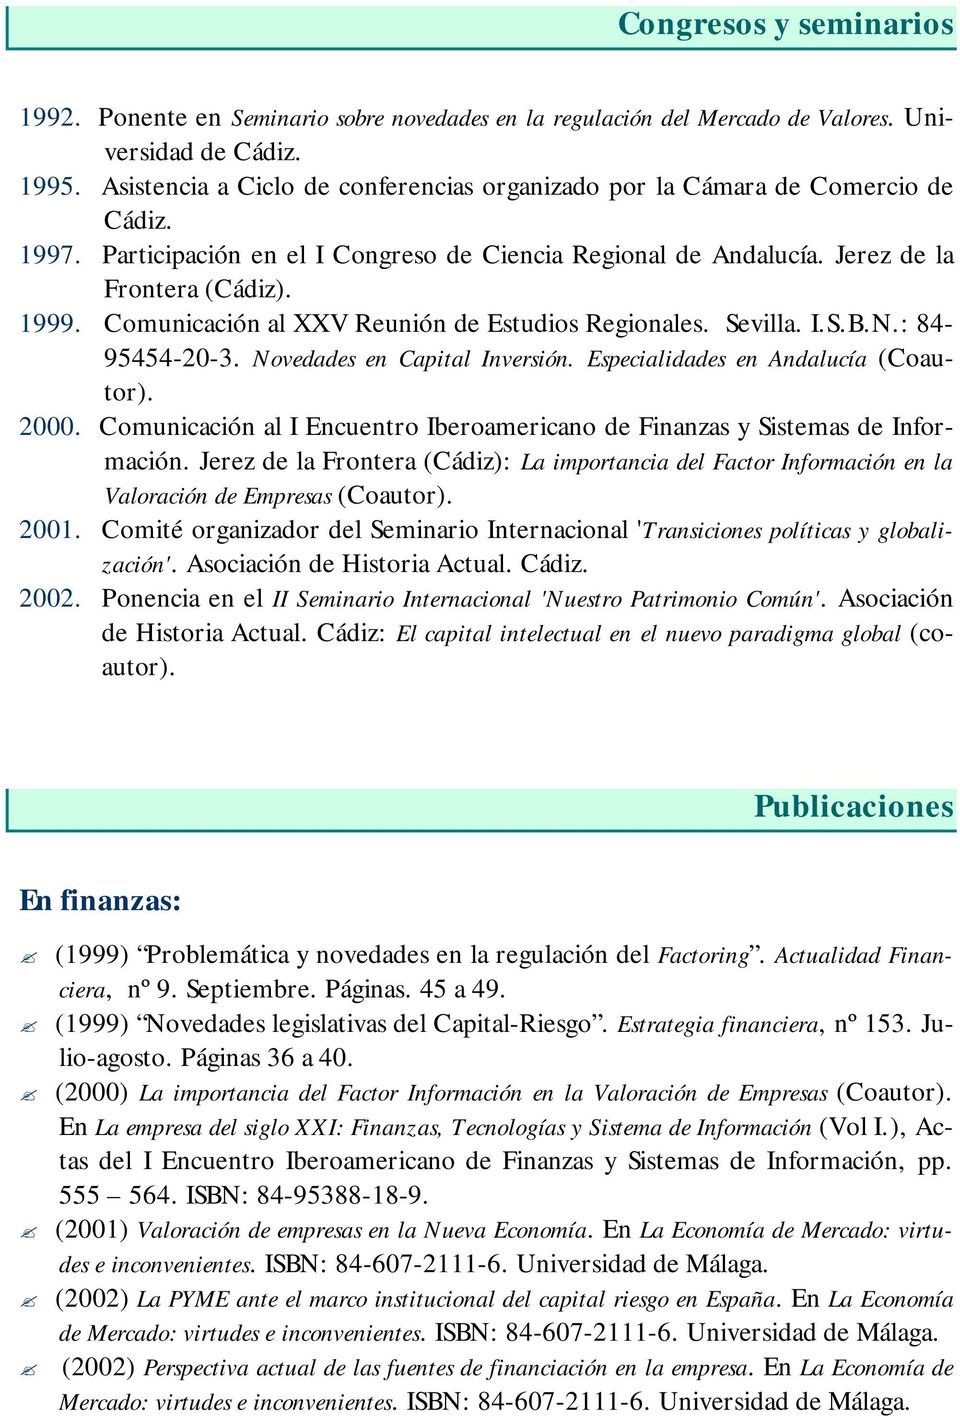 Comunicación al XXV Reunión de Estudios Regionales. Sevilla. I.S.B.N.: 84-95454-20-3. Novedades en Capital Inversión. Especialidades en Andalucía (Coautor). 2000.